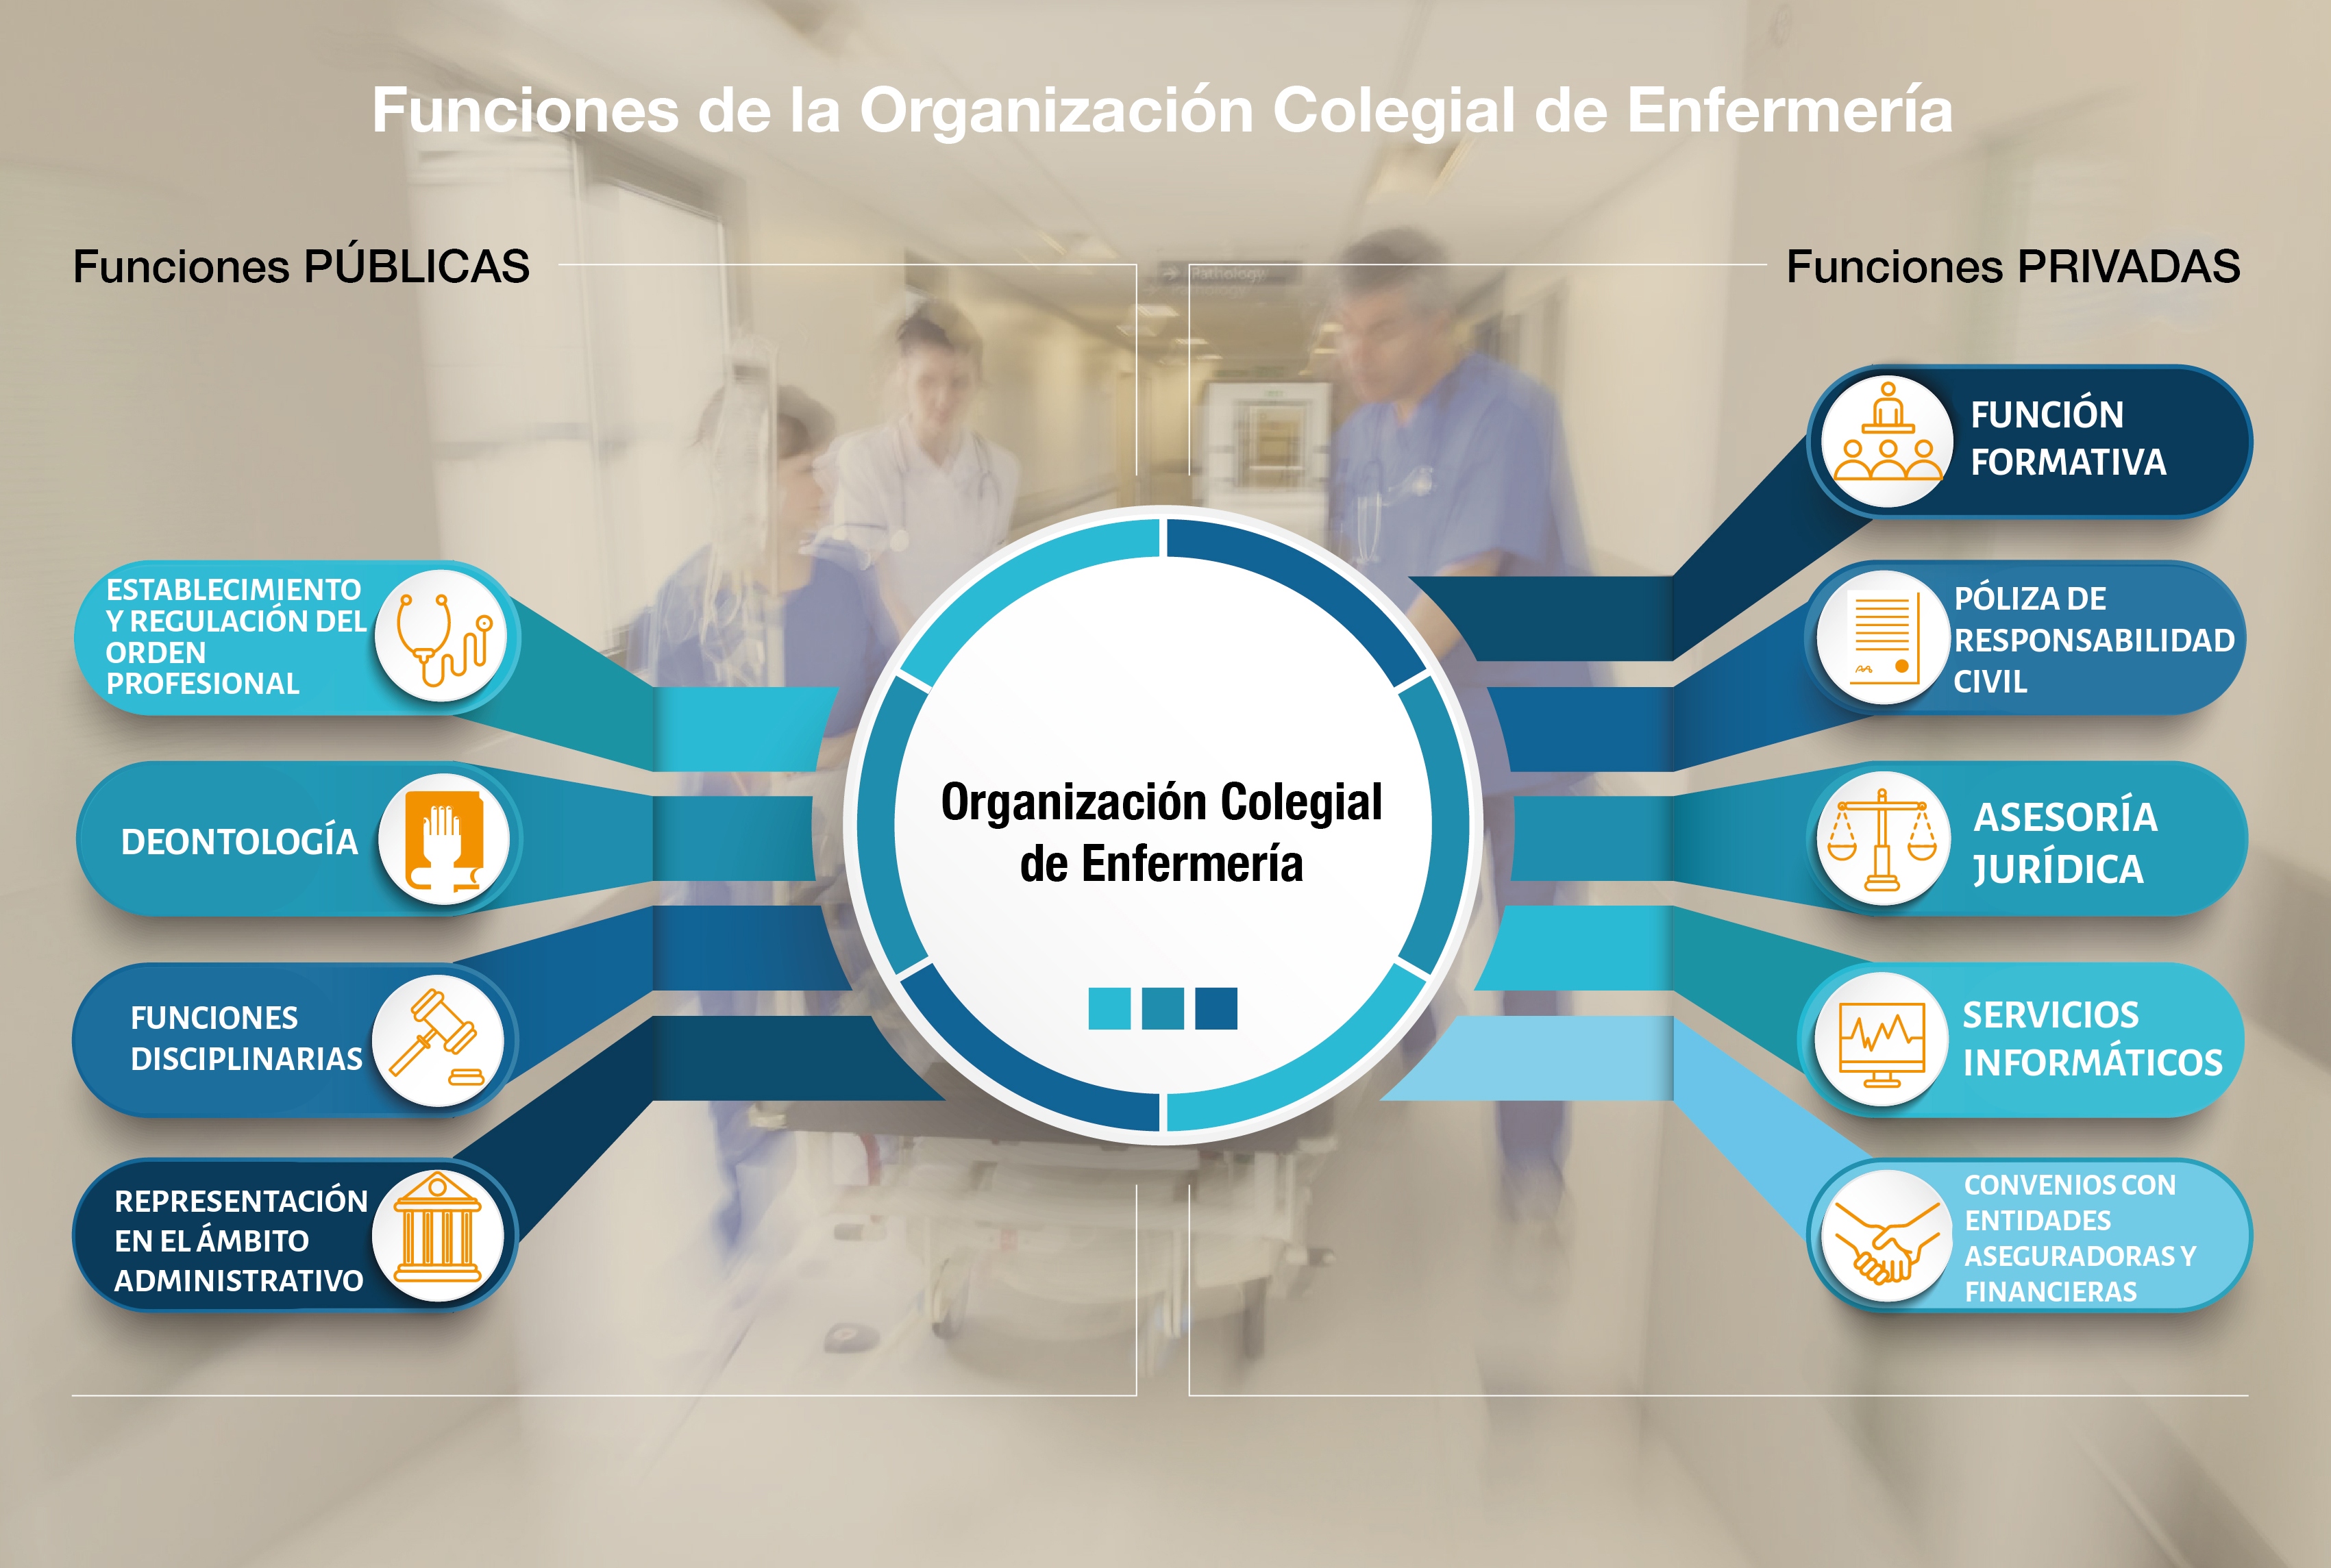 Funciones de la Organización Colegial de Enfermería